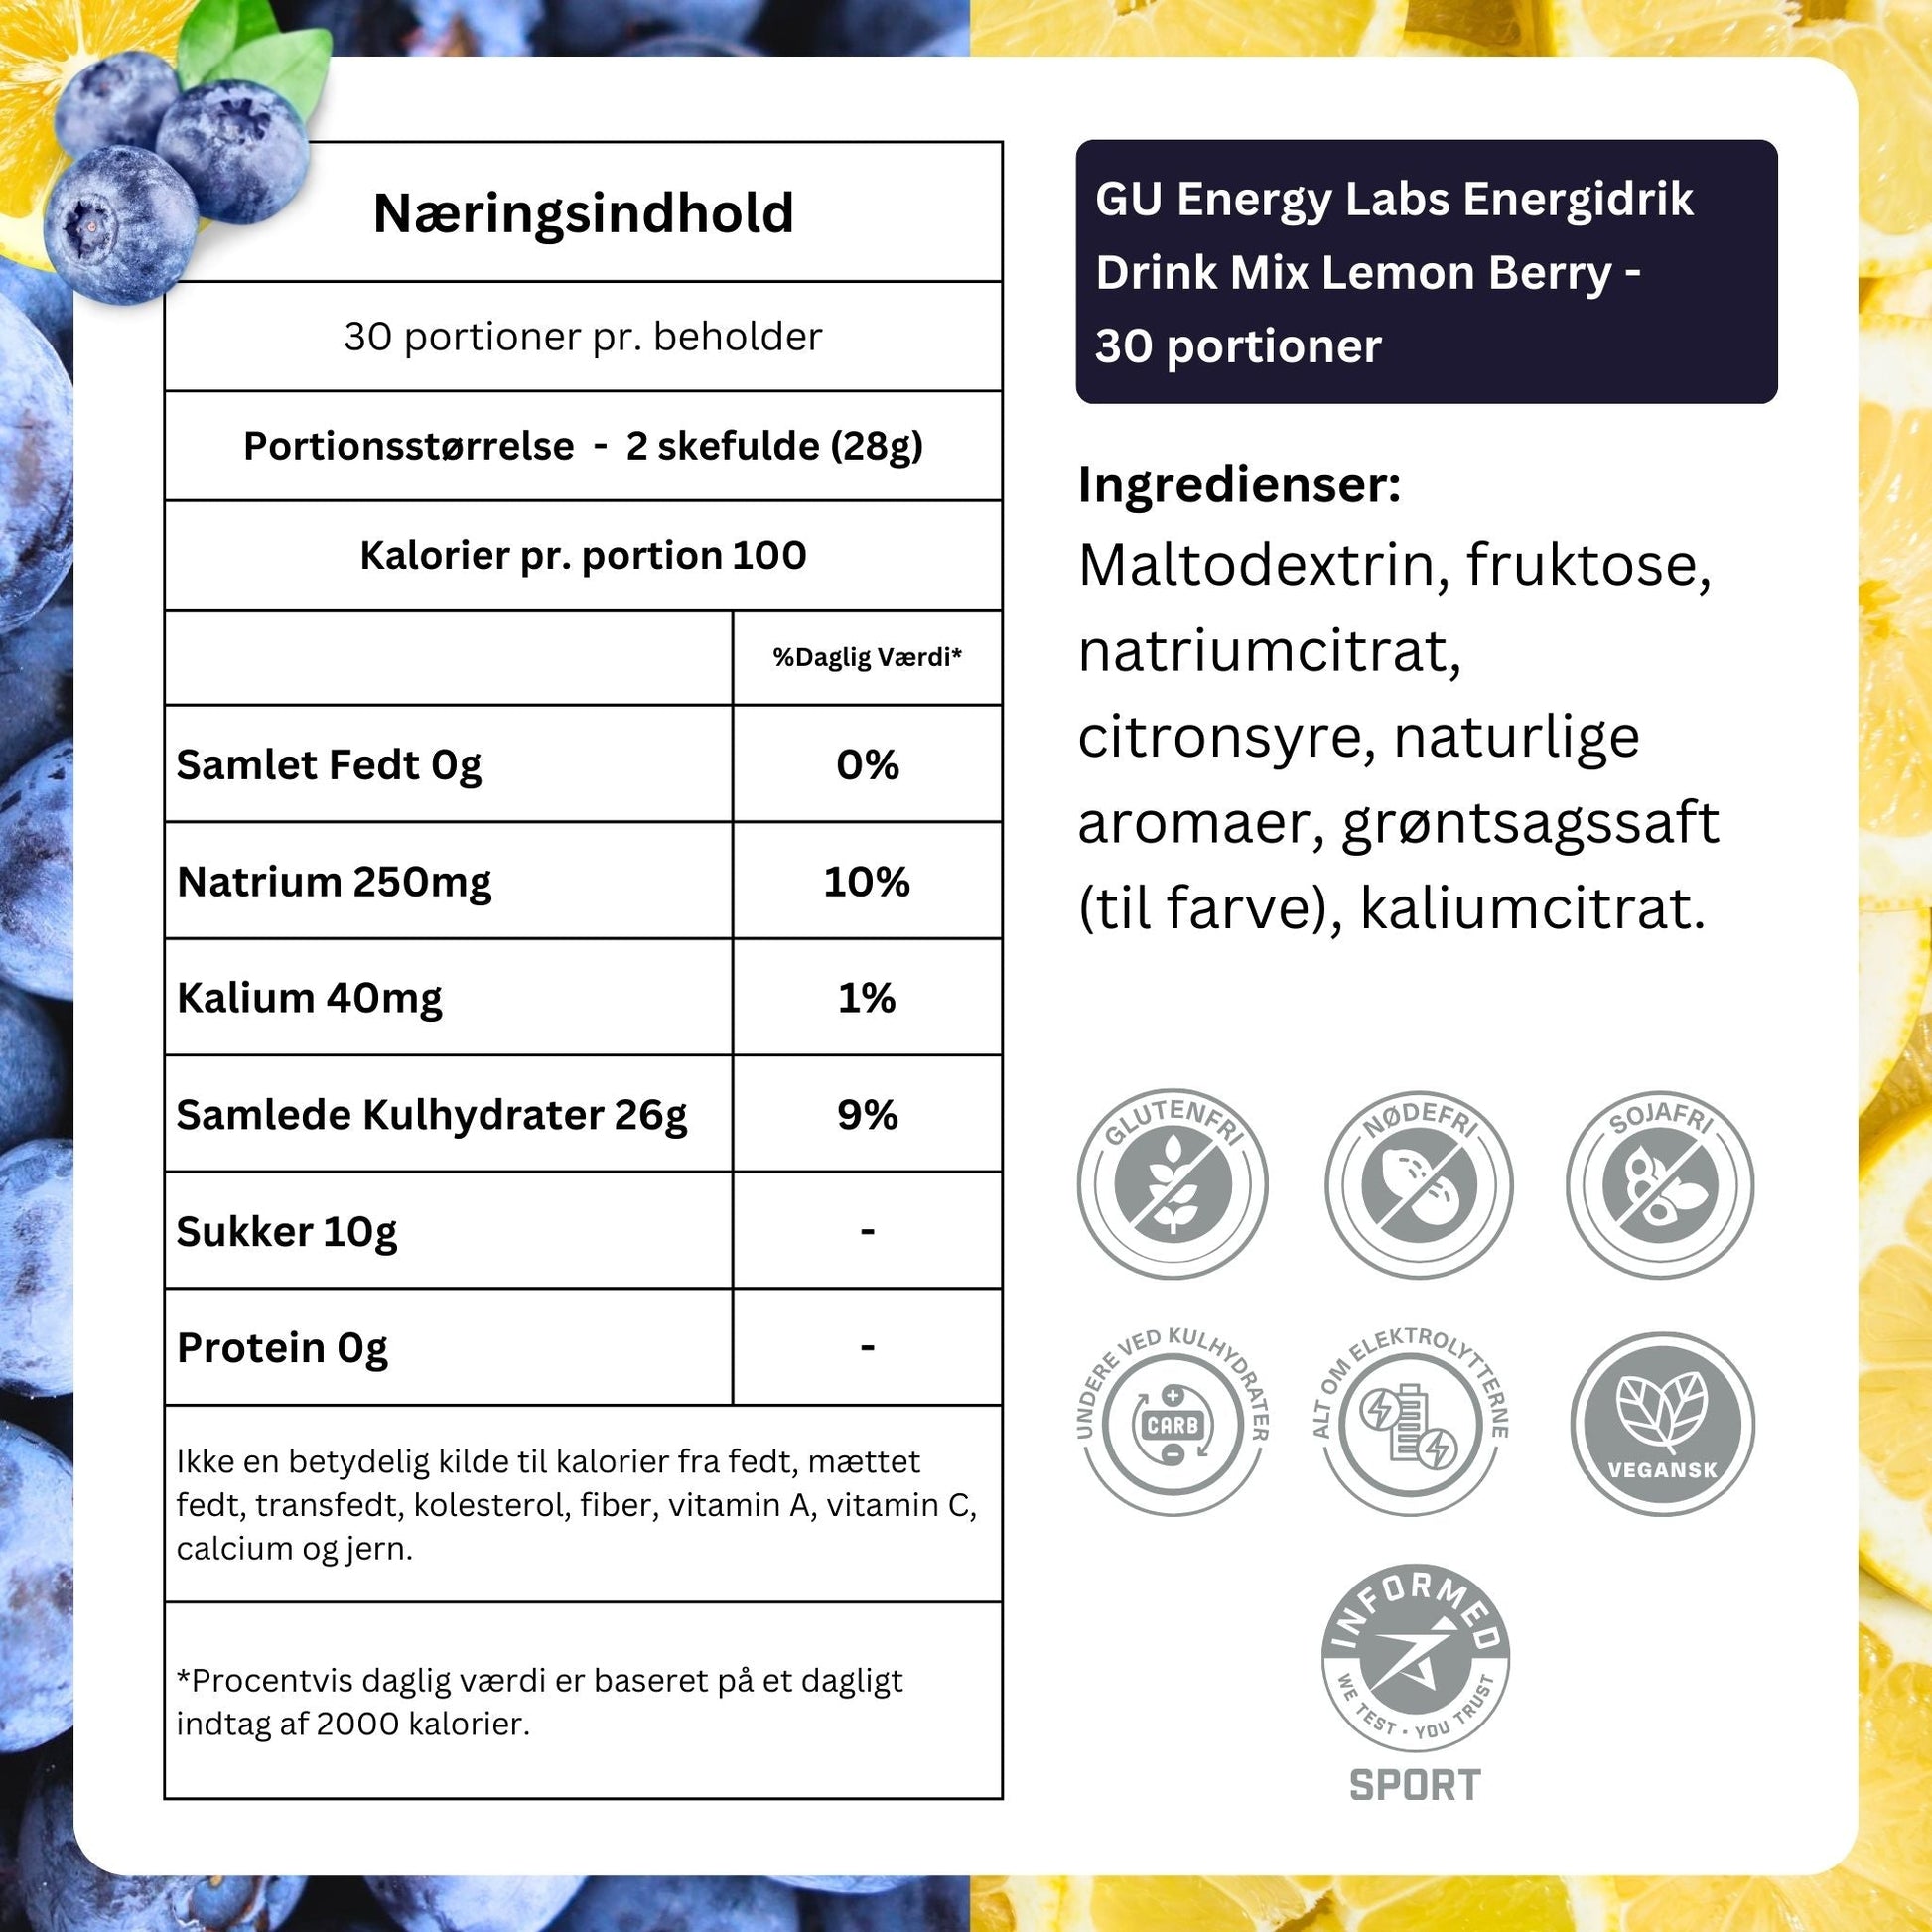 GU Energy Labs Energidrik Drink Mix Lemon Berry 30 portioner - Ingredients